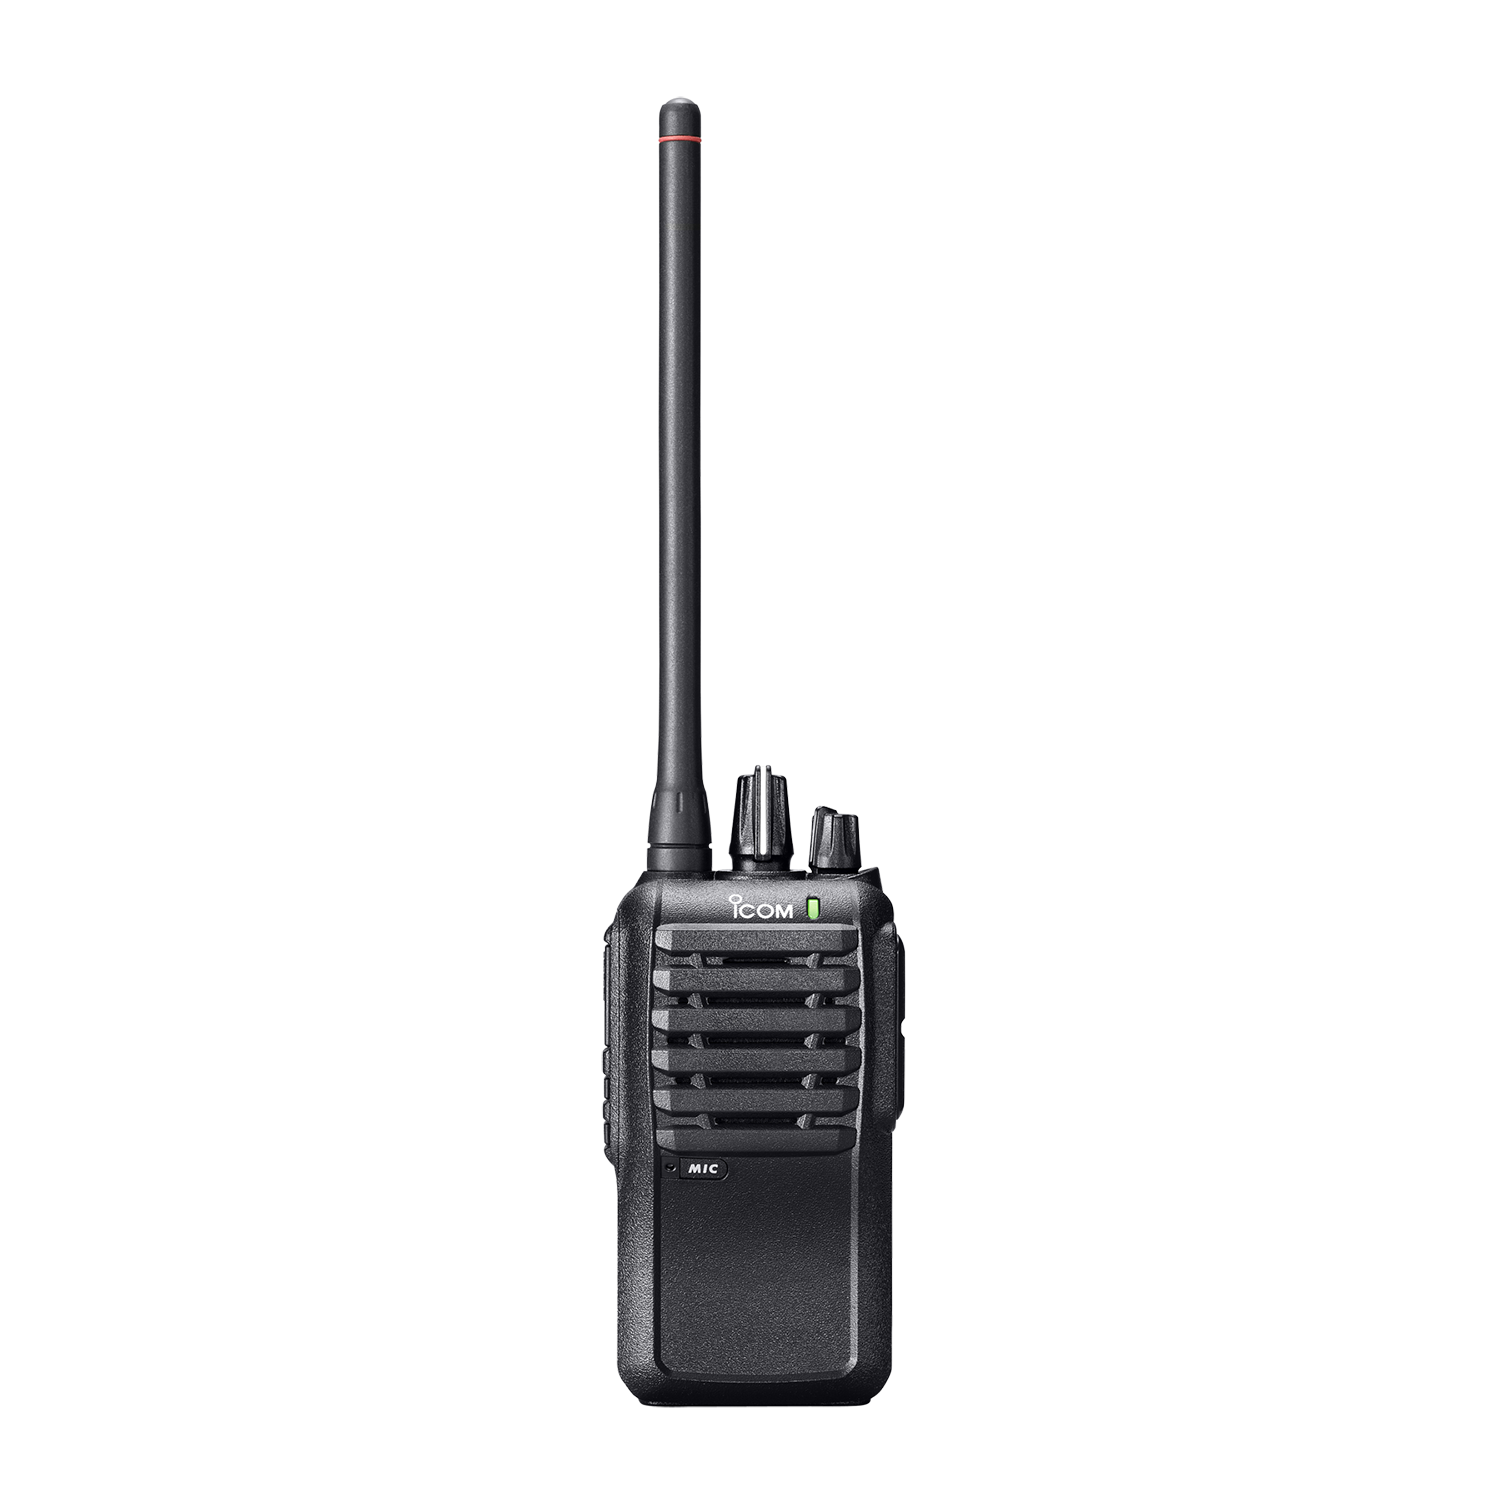 Портативная VHF радиостанция Icom IC-F3003